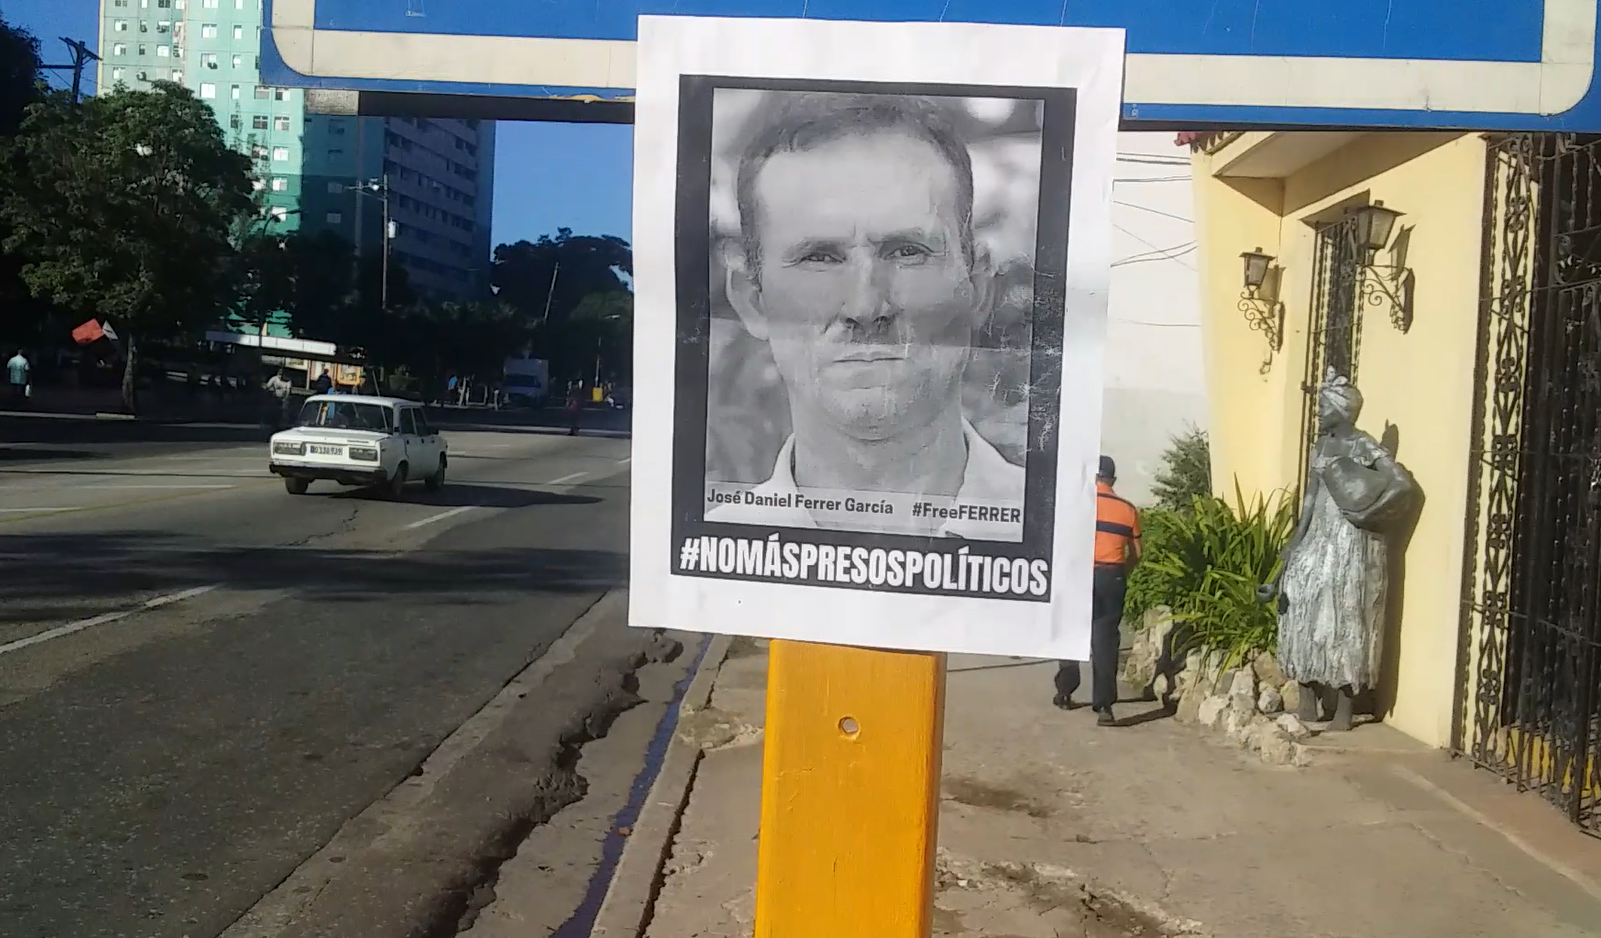 Cuba josé daniel ferrer preso político cubano unpacu presos políticos